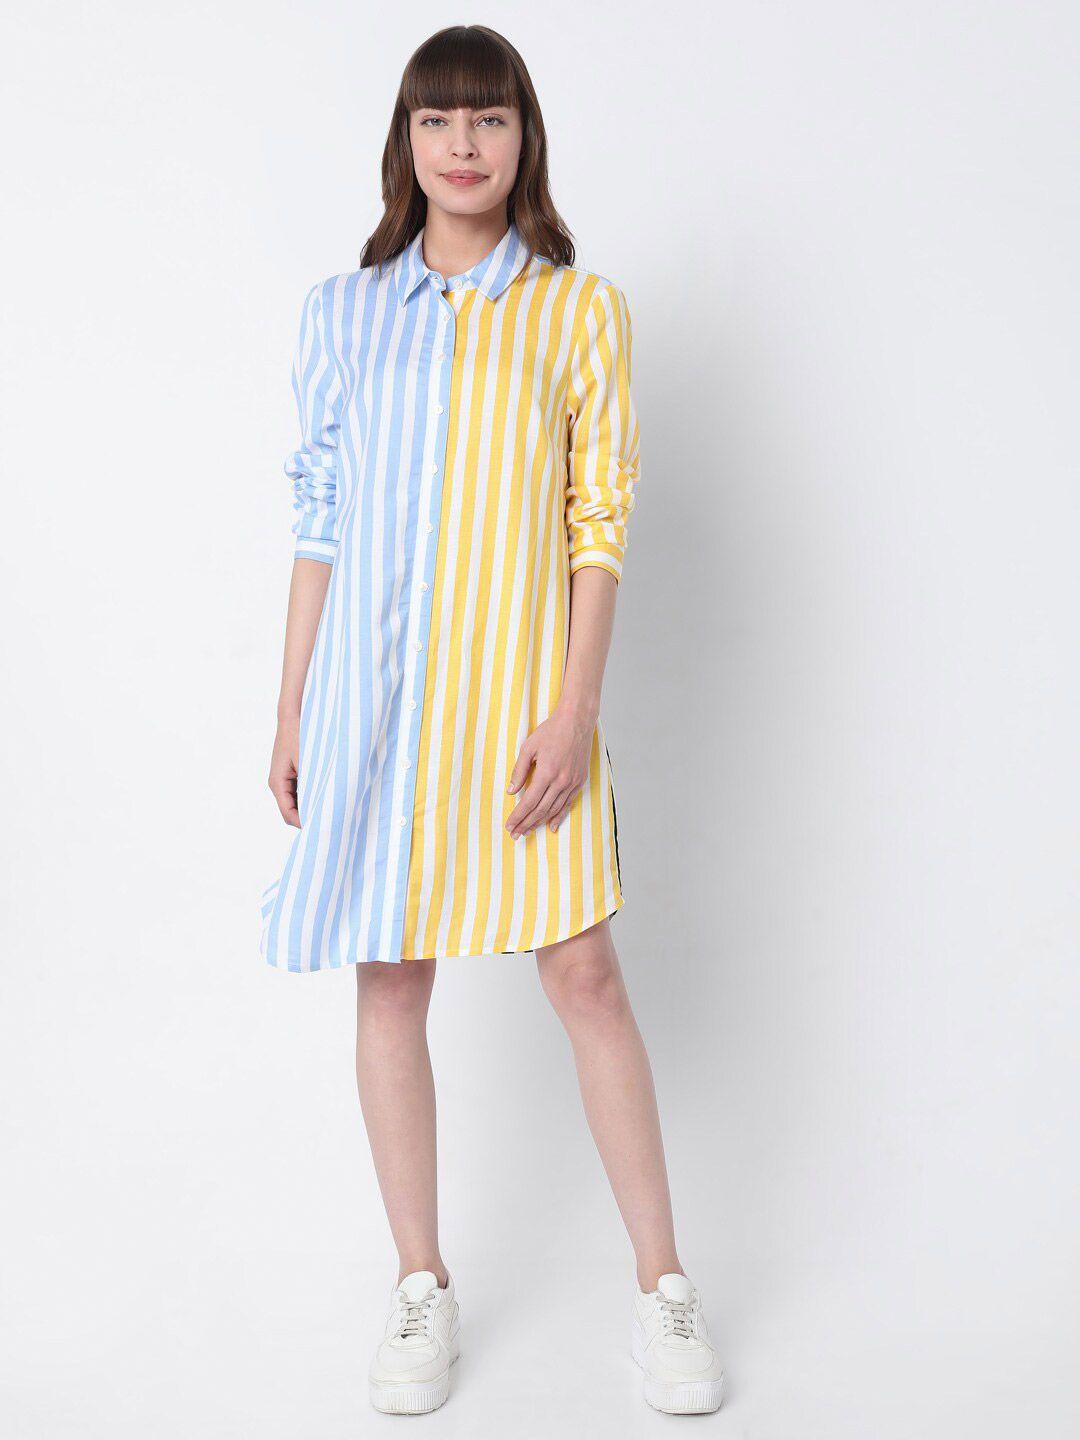 vero moda white & blue striped shirt dress